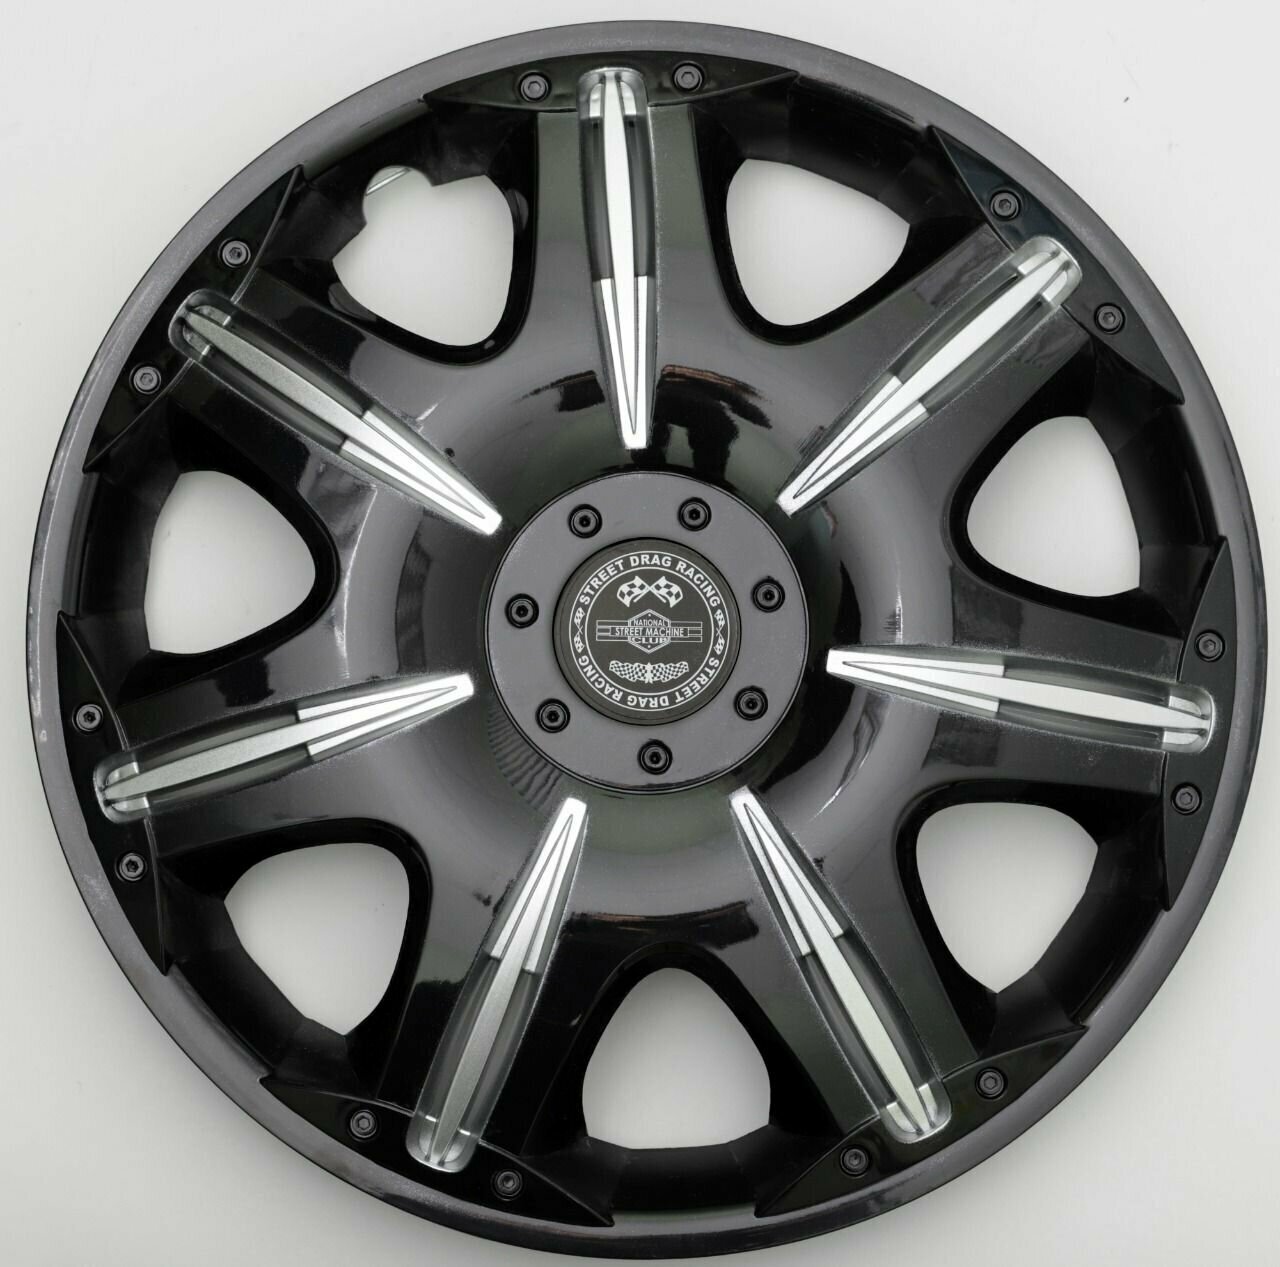 Колпаки на колеса STAR опус супер блэк R15 комплект 4 на диски радиус 15 легковой авто черный серебристый